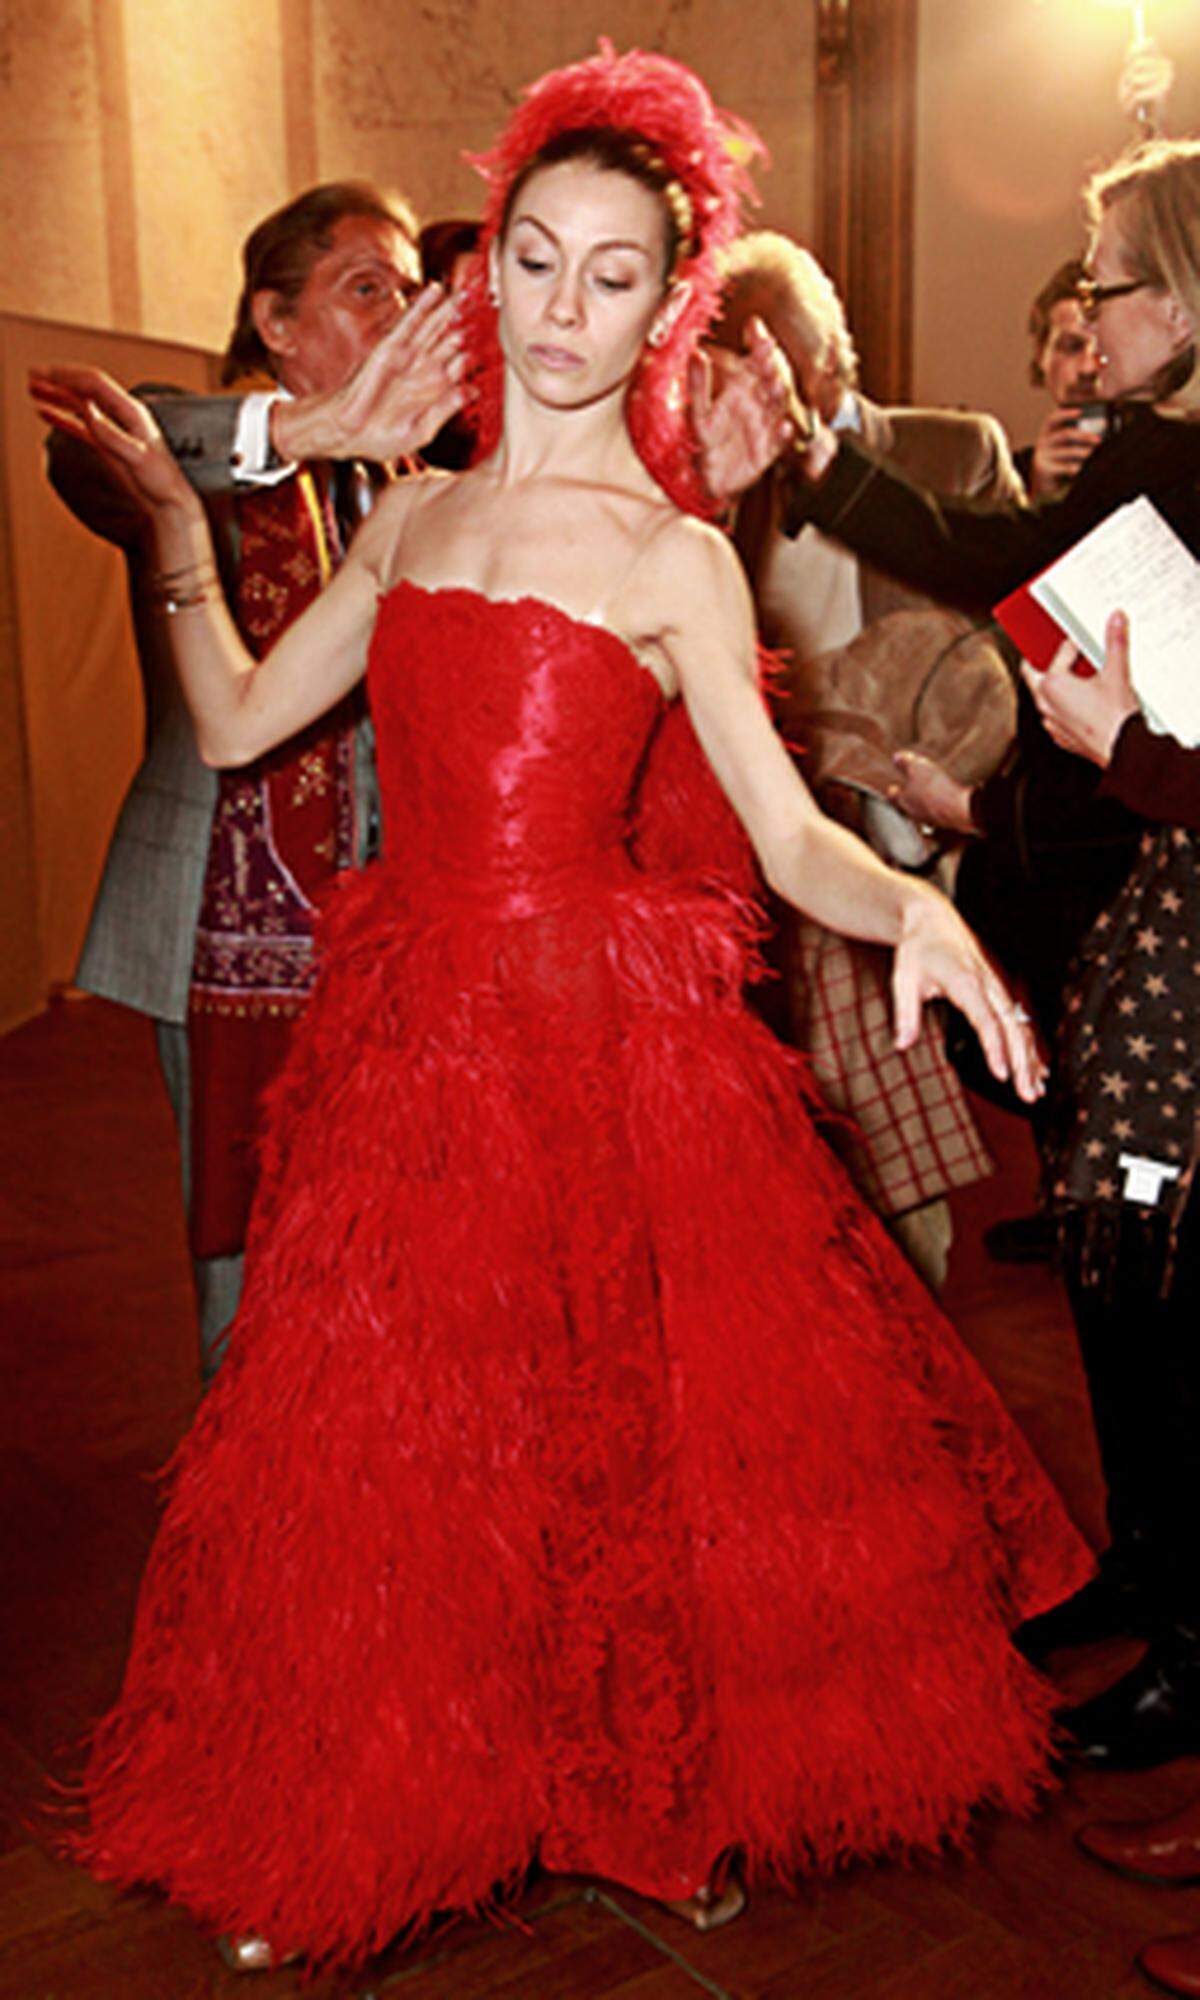 Die Sizilianerin Abbagnato und der Pariser Le Riche tanzen zur Polka Mazur "Ein Herz, ein Sinn" von Johann Strauß Sohn. Outfit-technisch sticht sie mit einem roten Valentino-Kleid heraus.